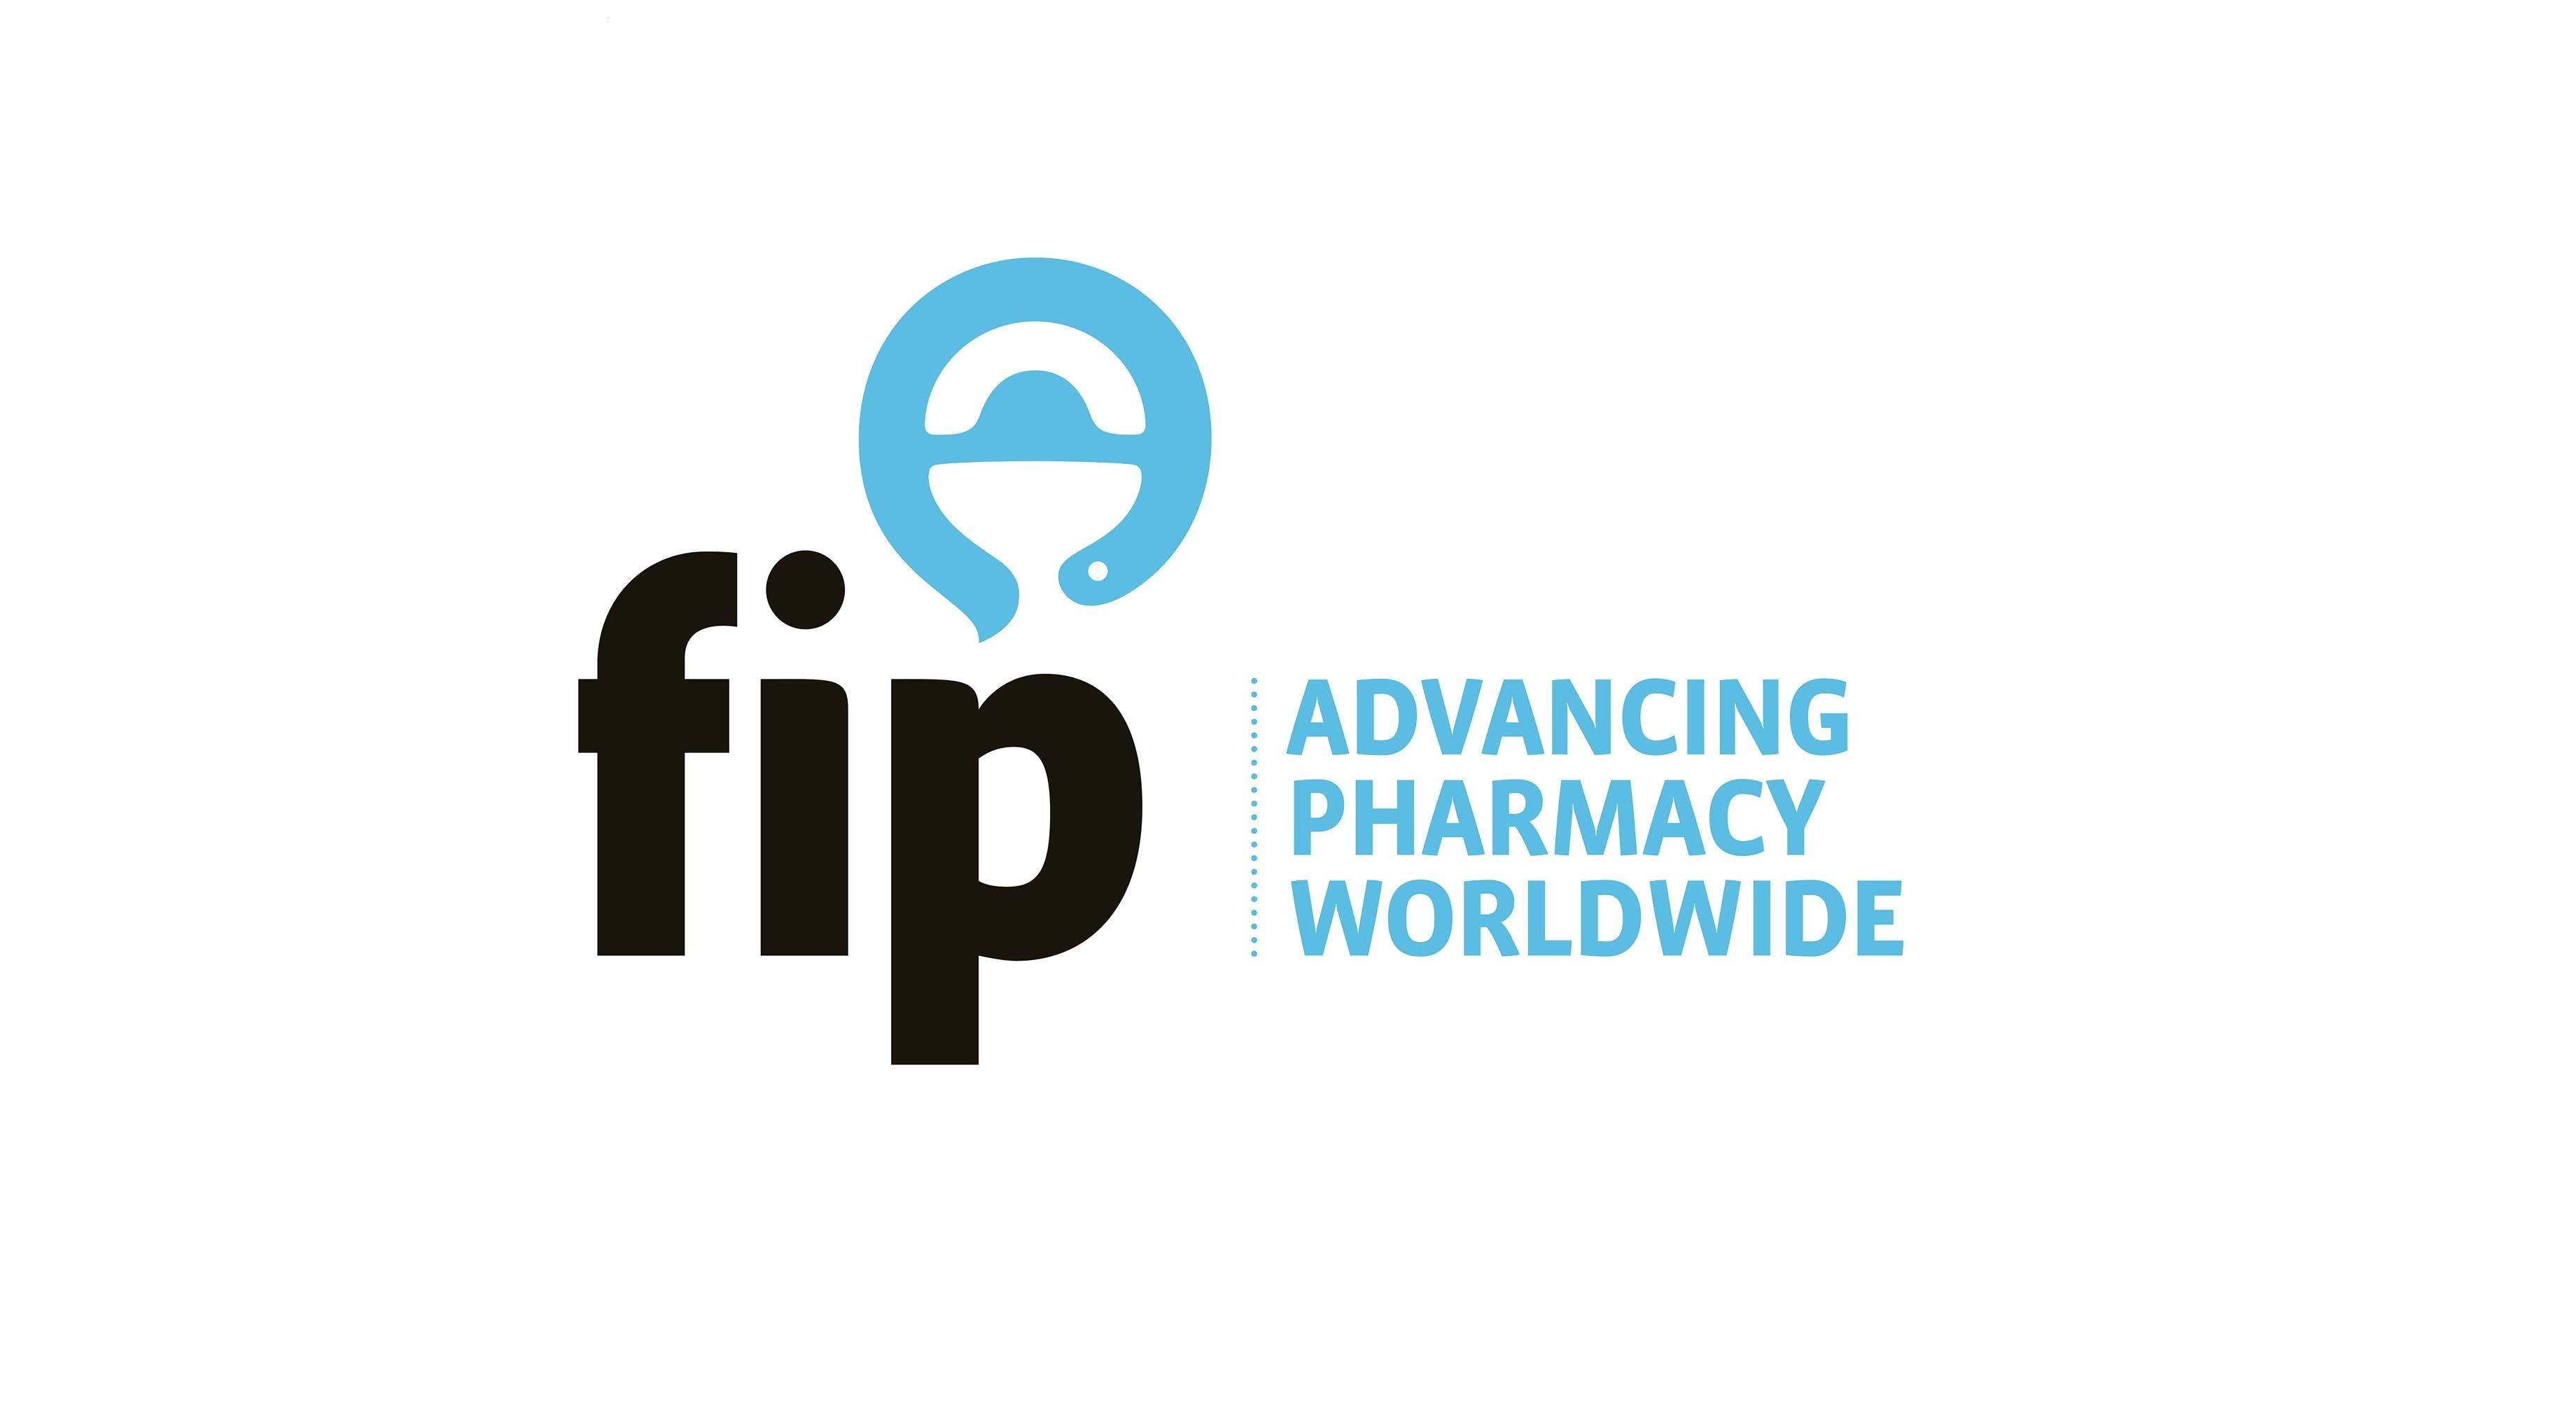 Stali sme sa členmi Medzinárodnej farmaceutickej federácie FIP